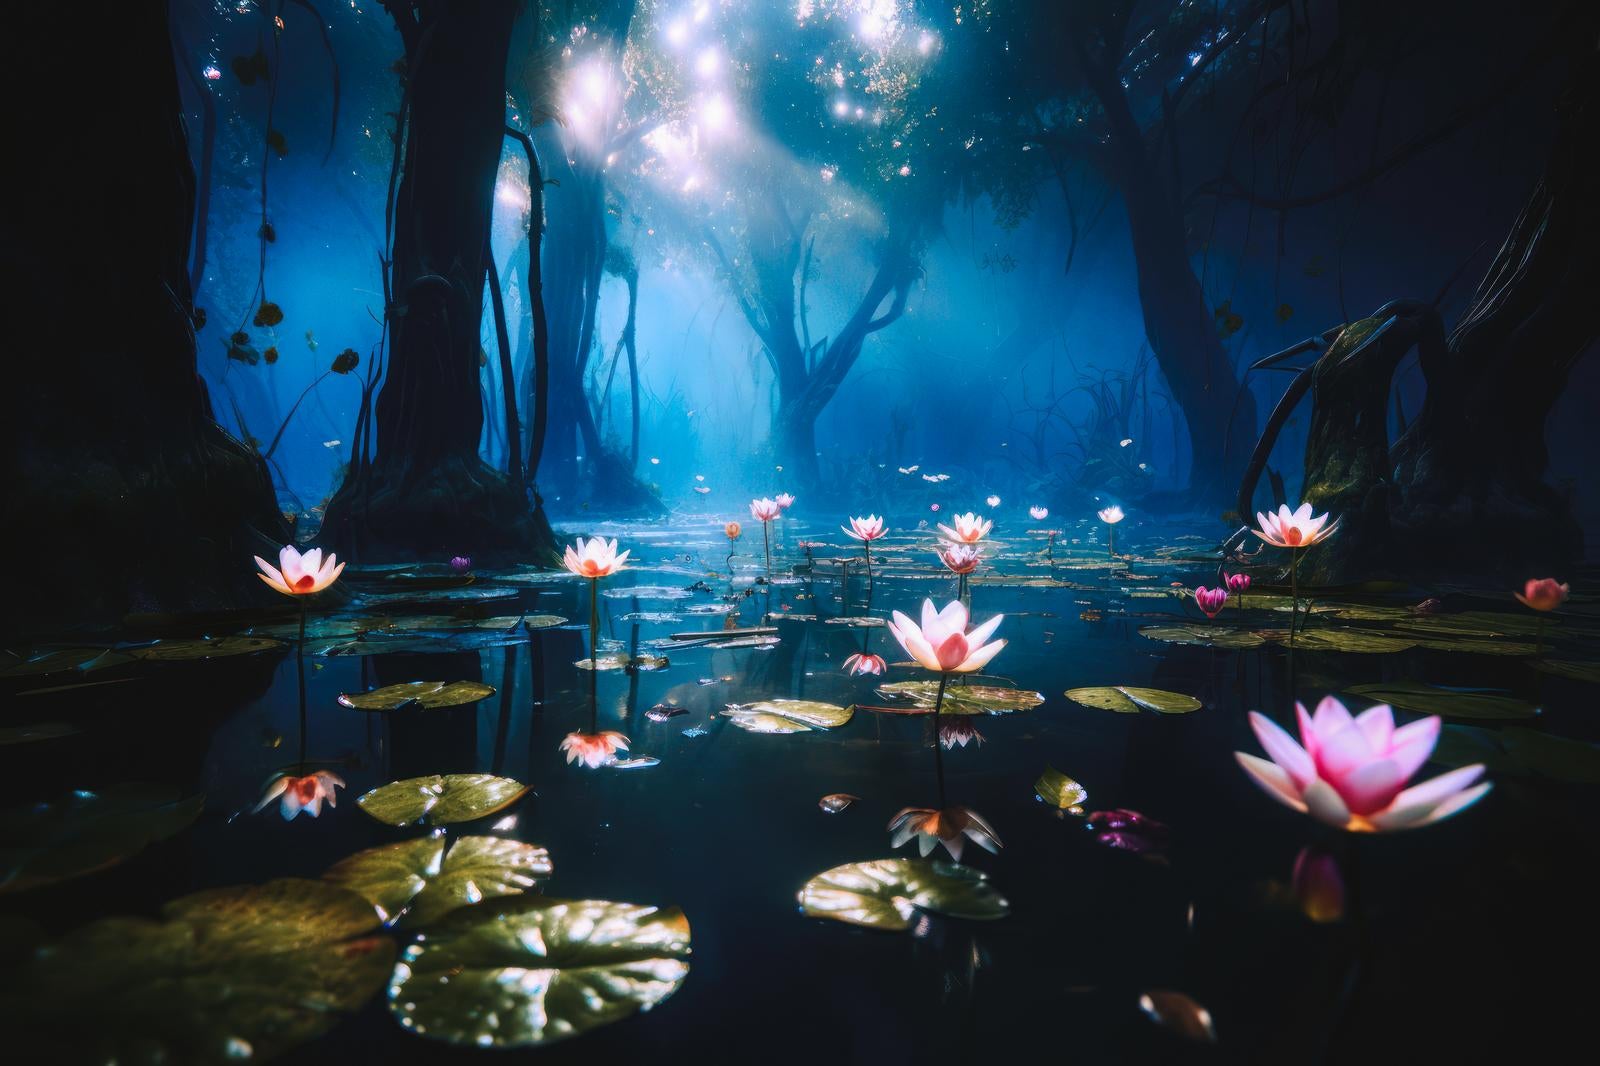 「静寂の湿地帯、蓮の花に注ぐ木漏れ日」の写真